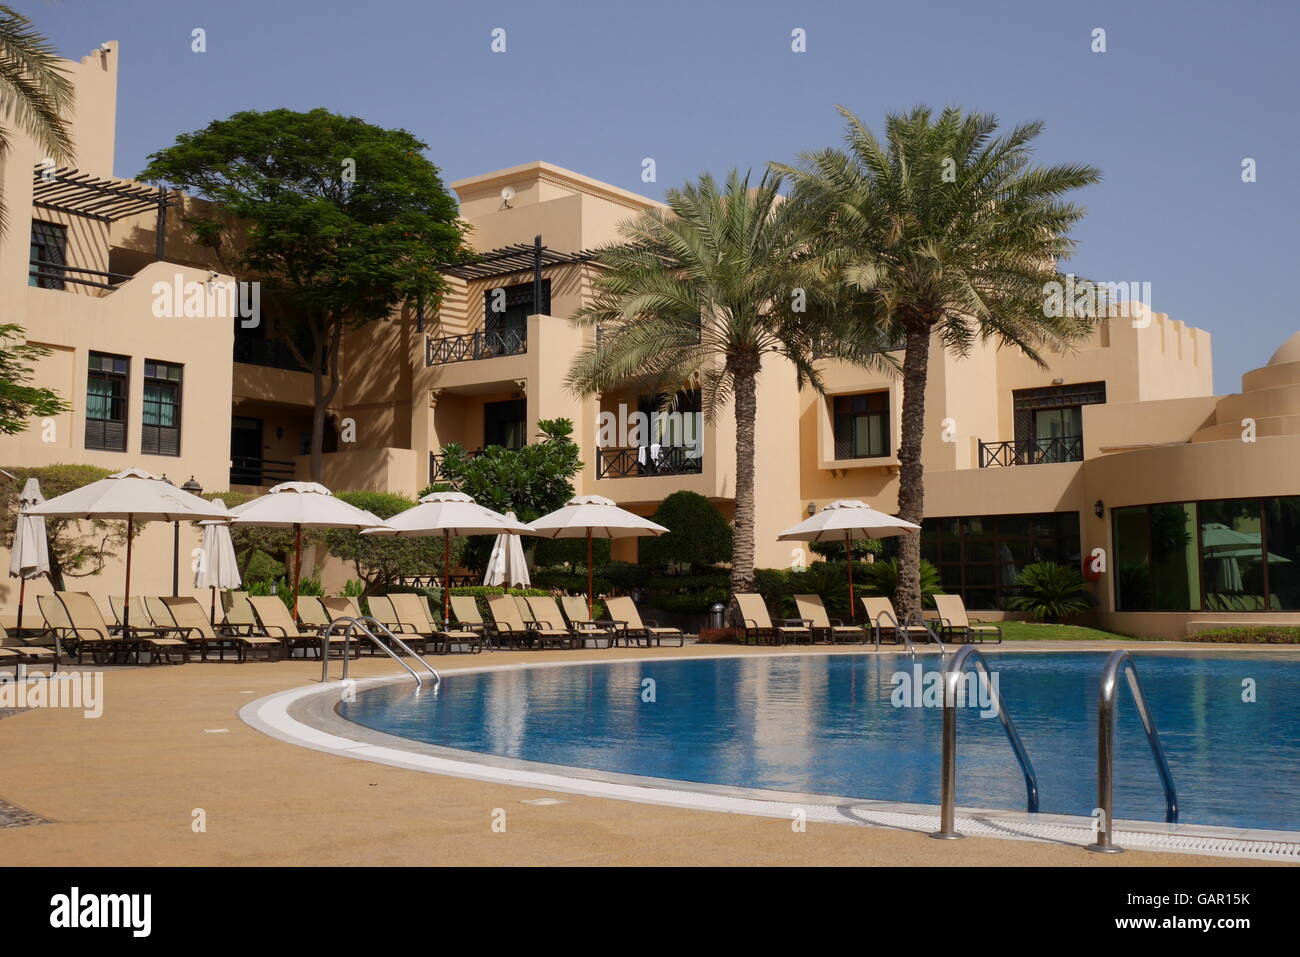 La piscine de l'hôtel Novotel, Royaume de Bahreïn Banque D'Images